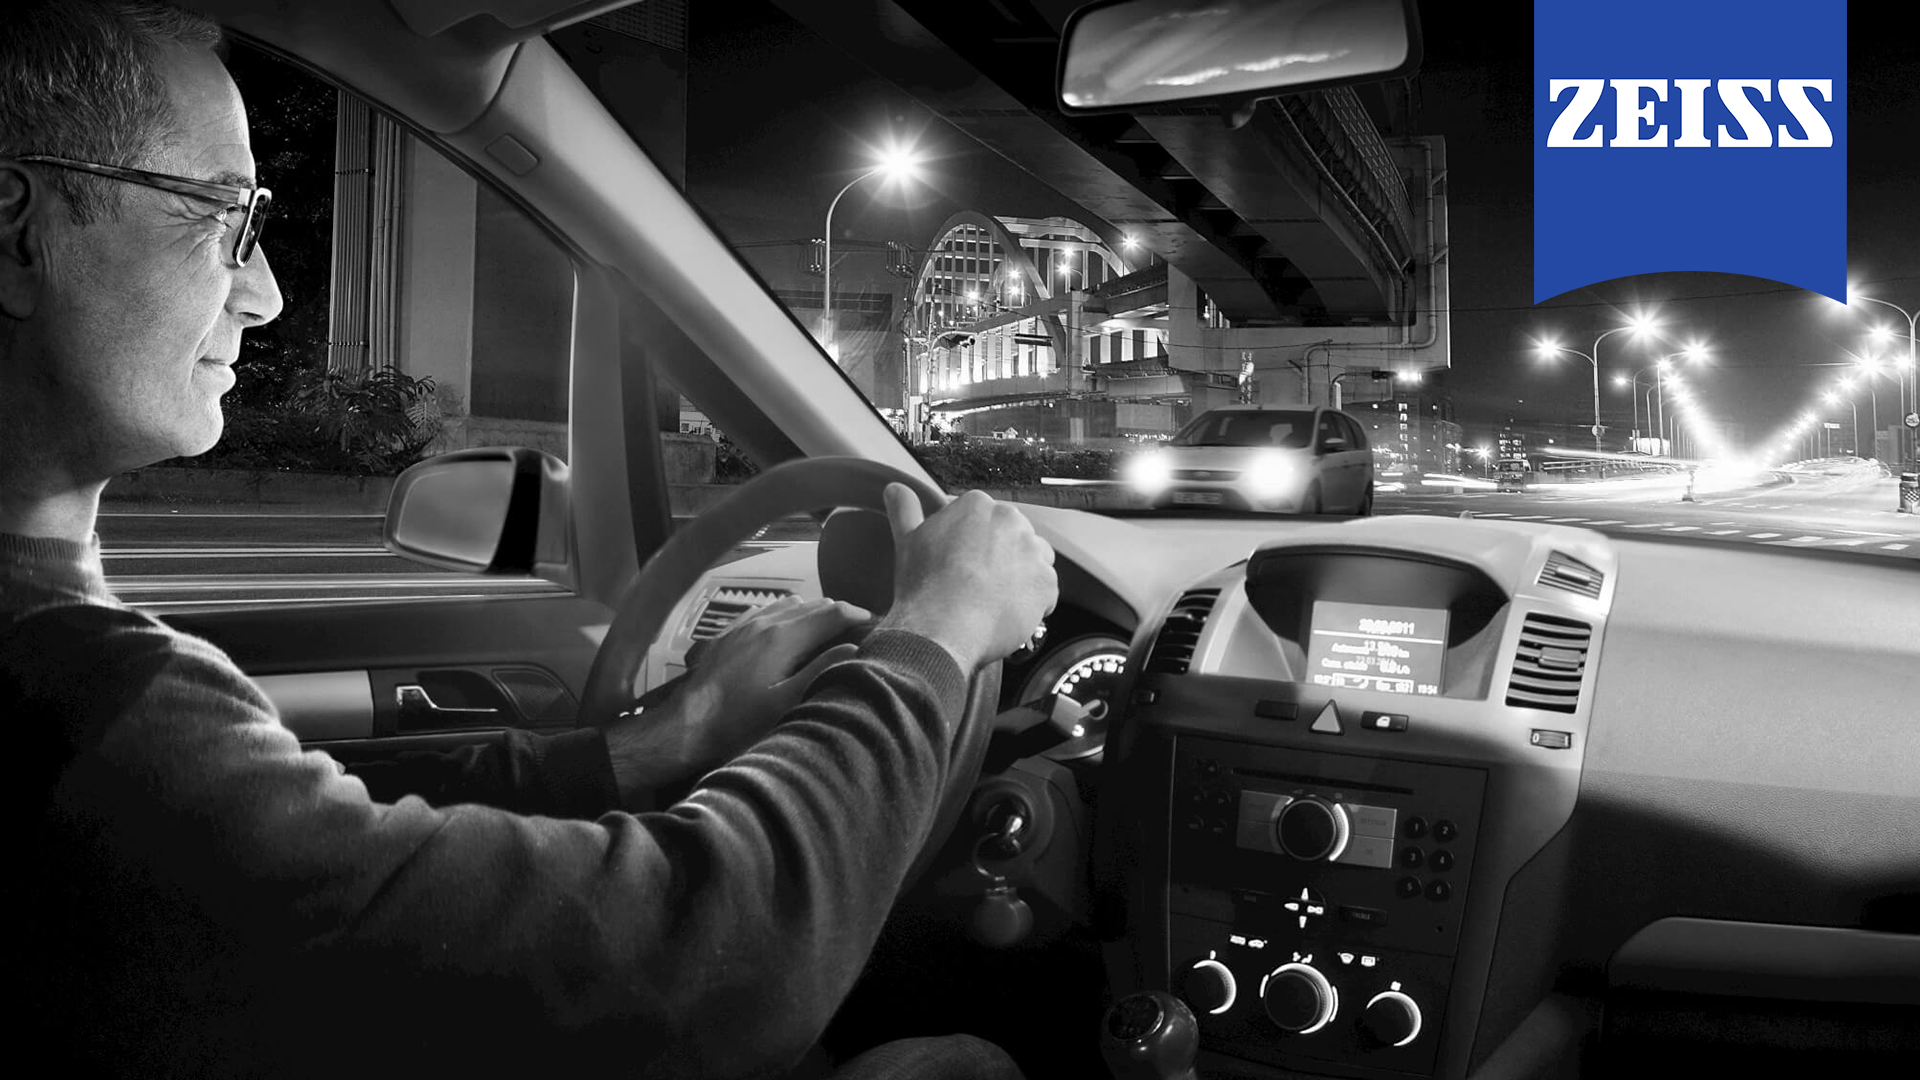 معرفی ویژگی های عدسی drive safe زایس برای رانندگی راحت و مطمئن